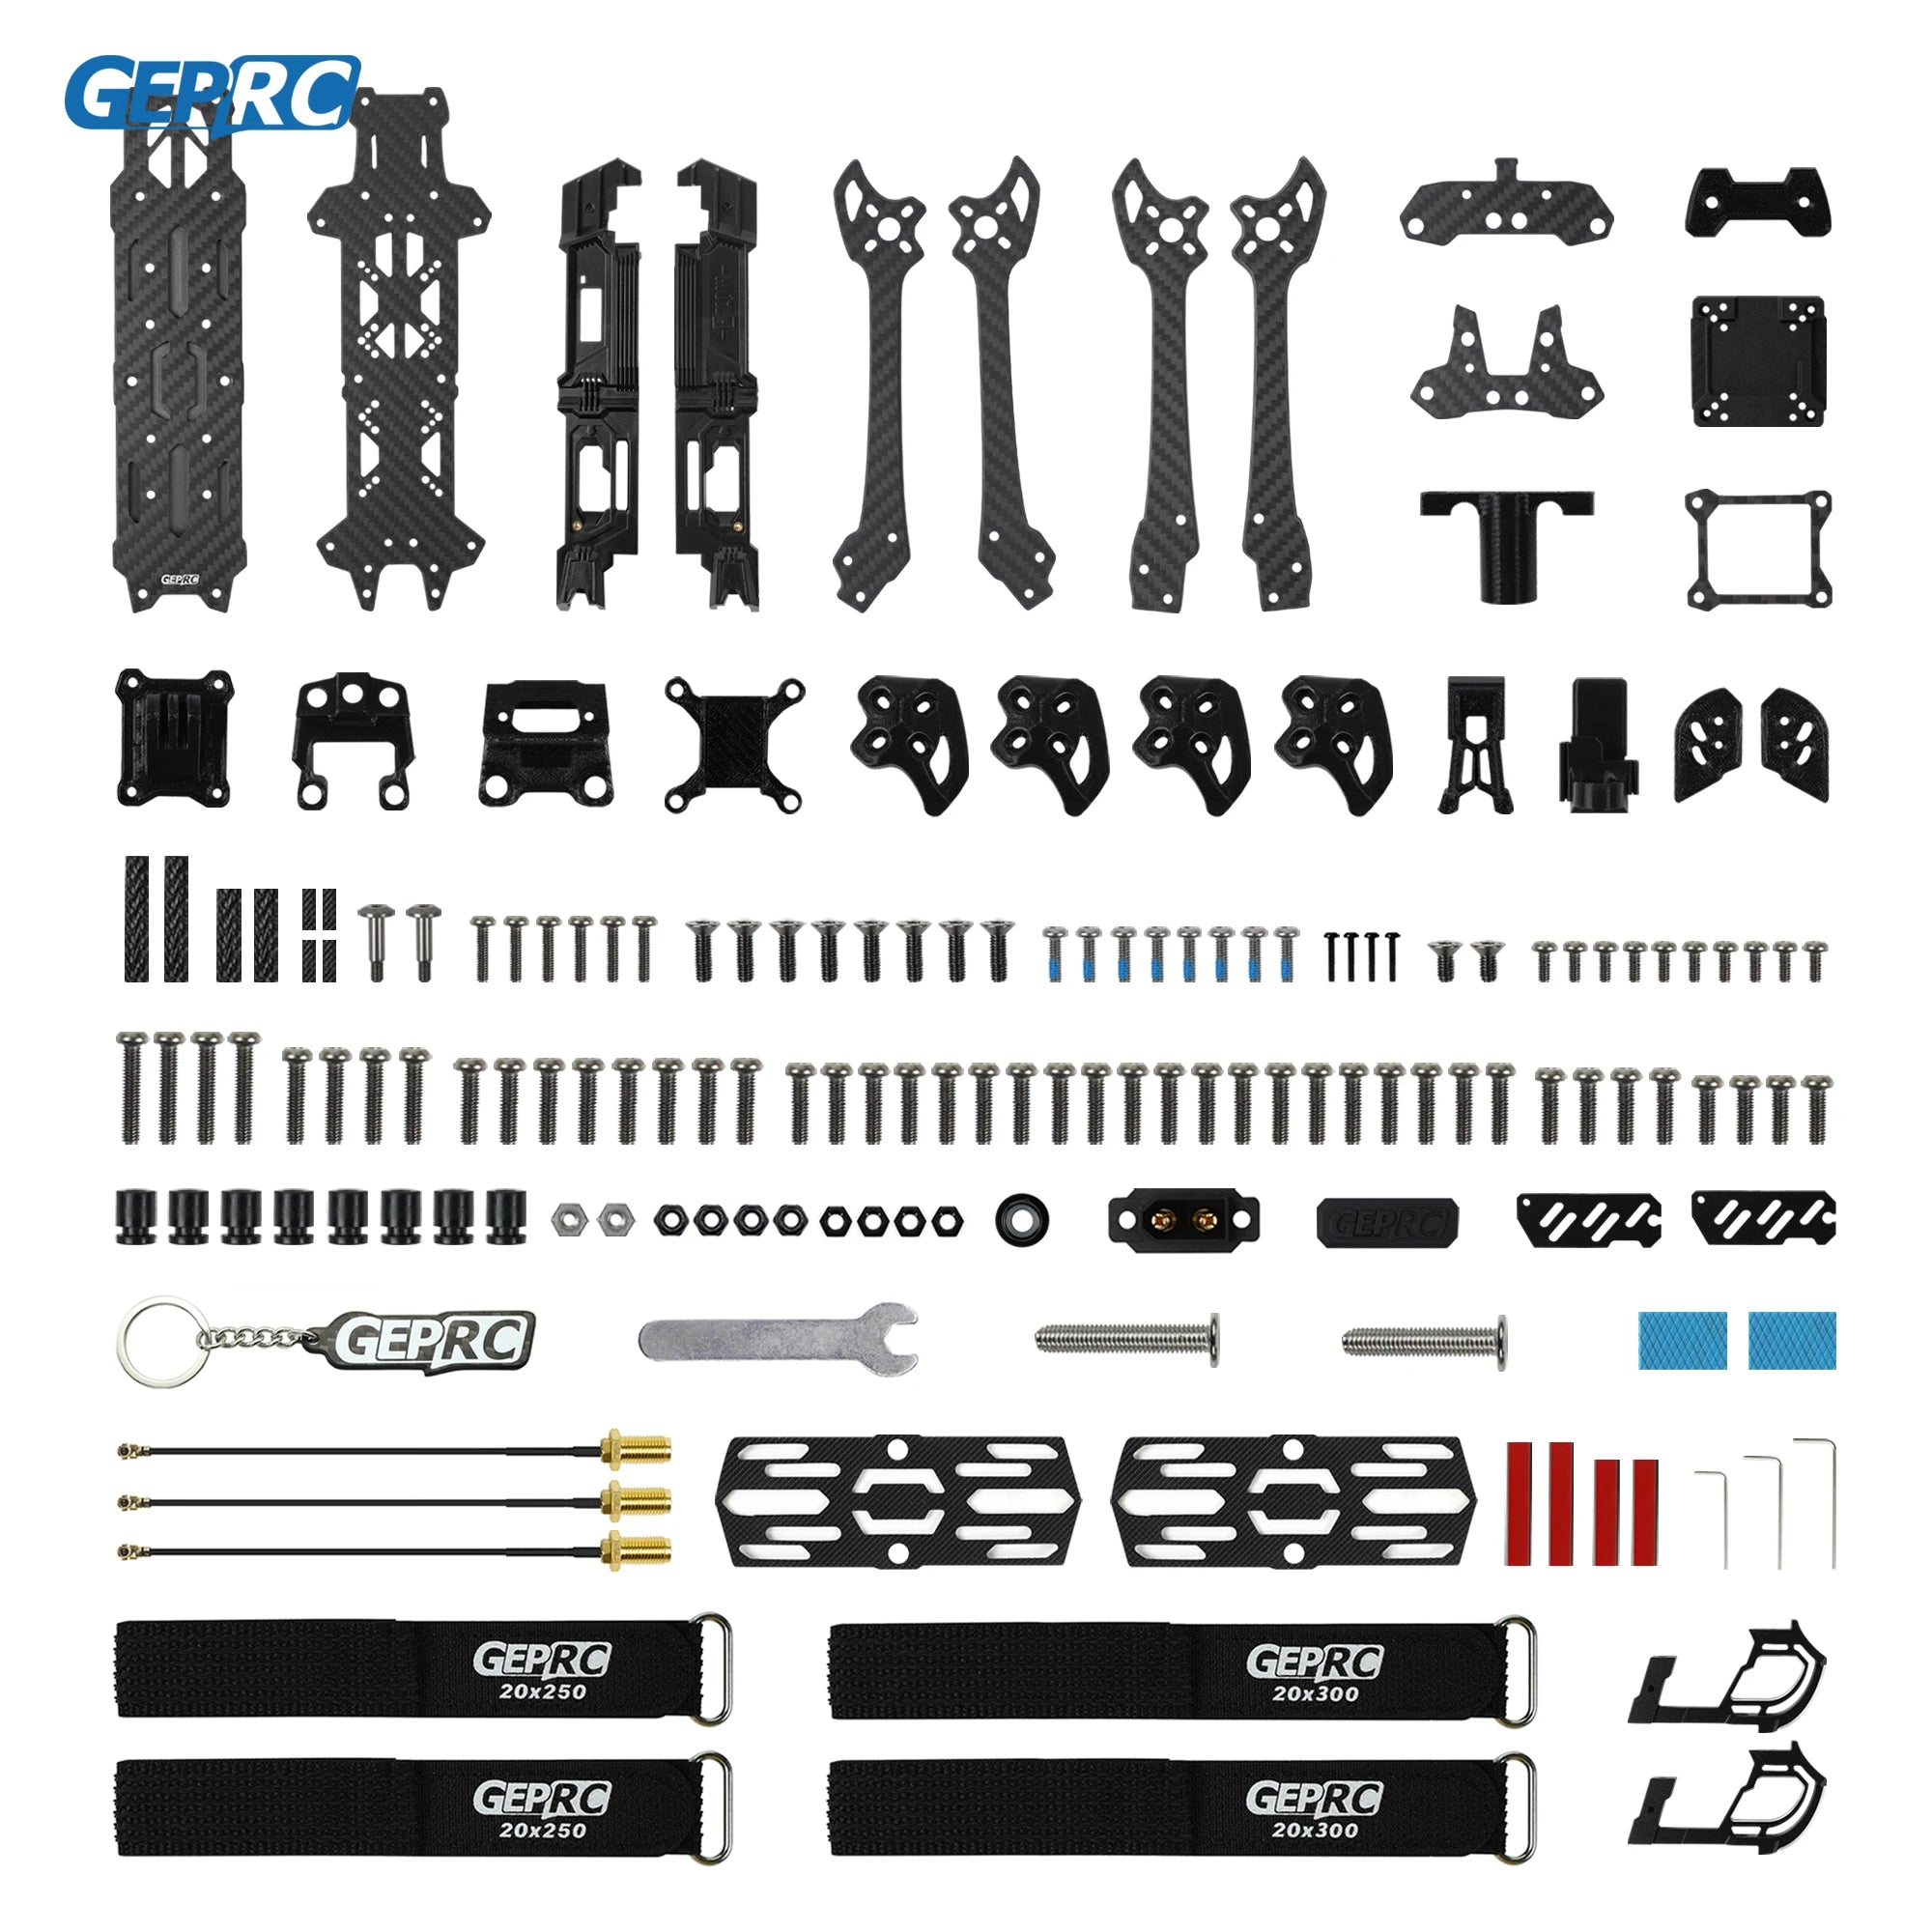 GEP-MOZ7 Frame Parts, CERRC AeR T 9989A400 IItt tttTT